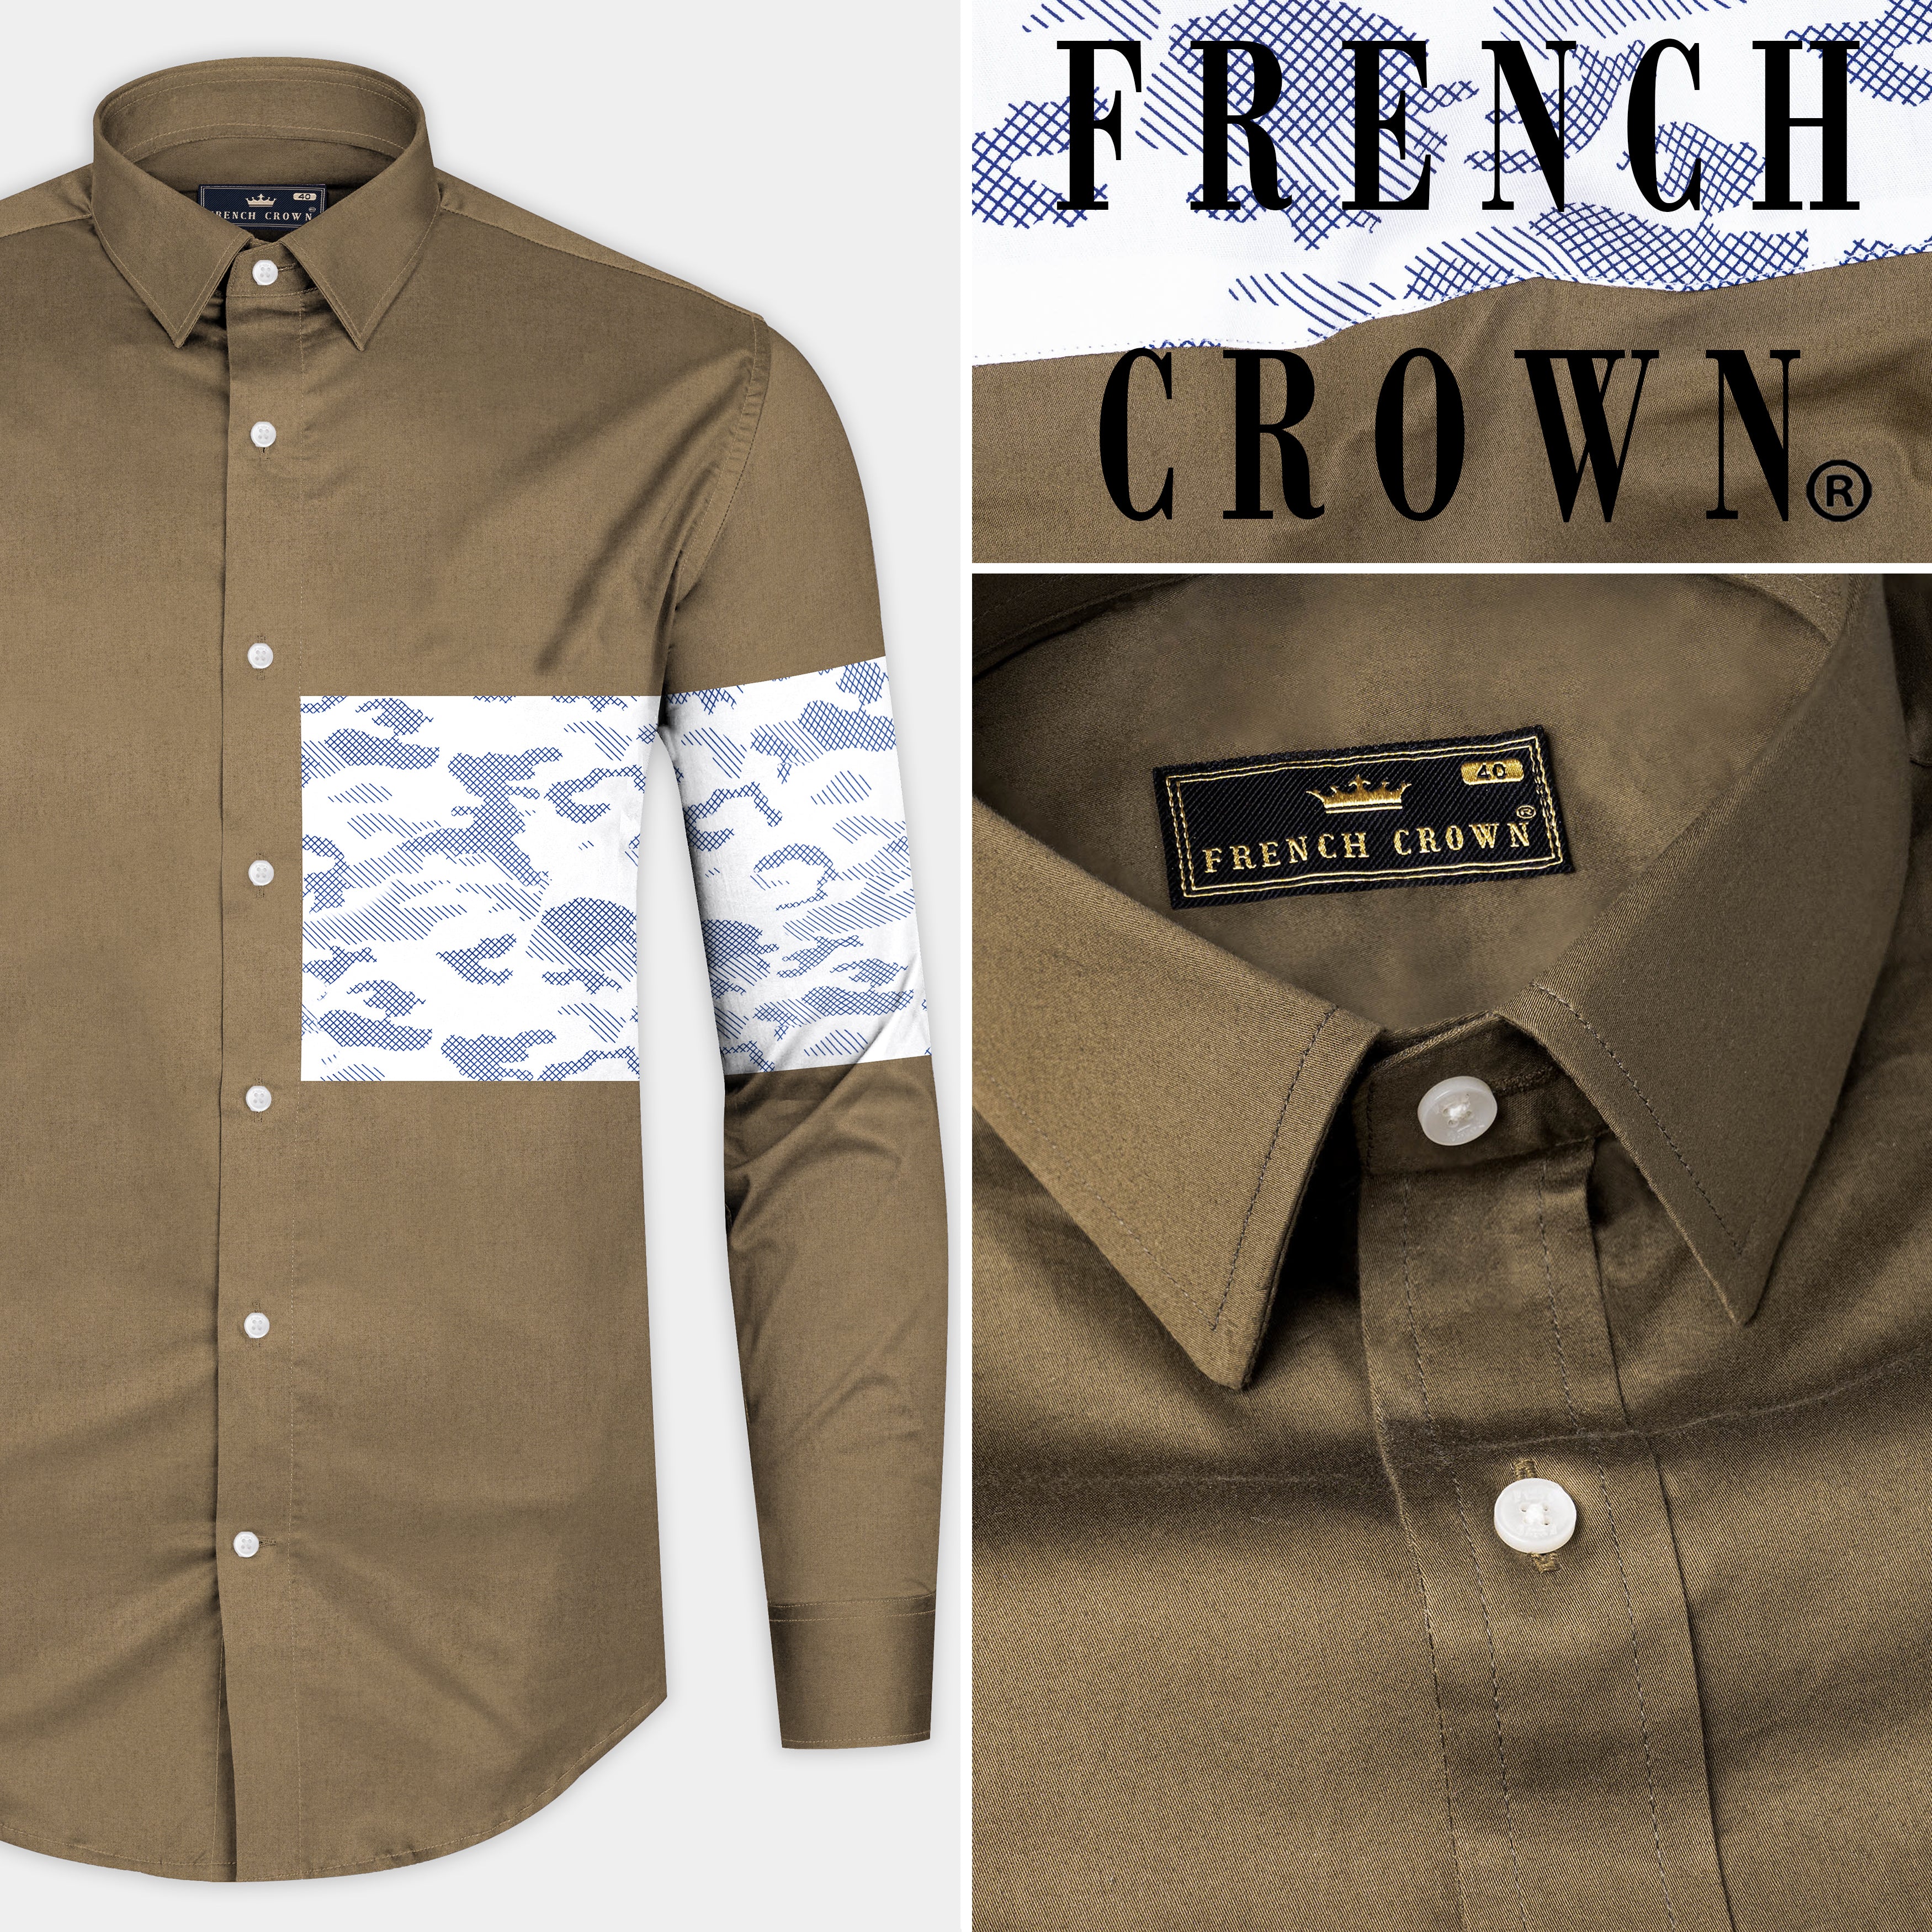 Hemlock Brown with Bright White Stitched Design Super Soft Premium Cotton Designer Shirt.